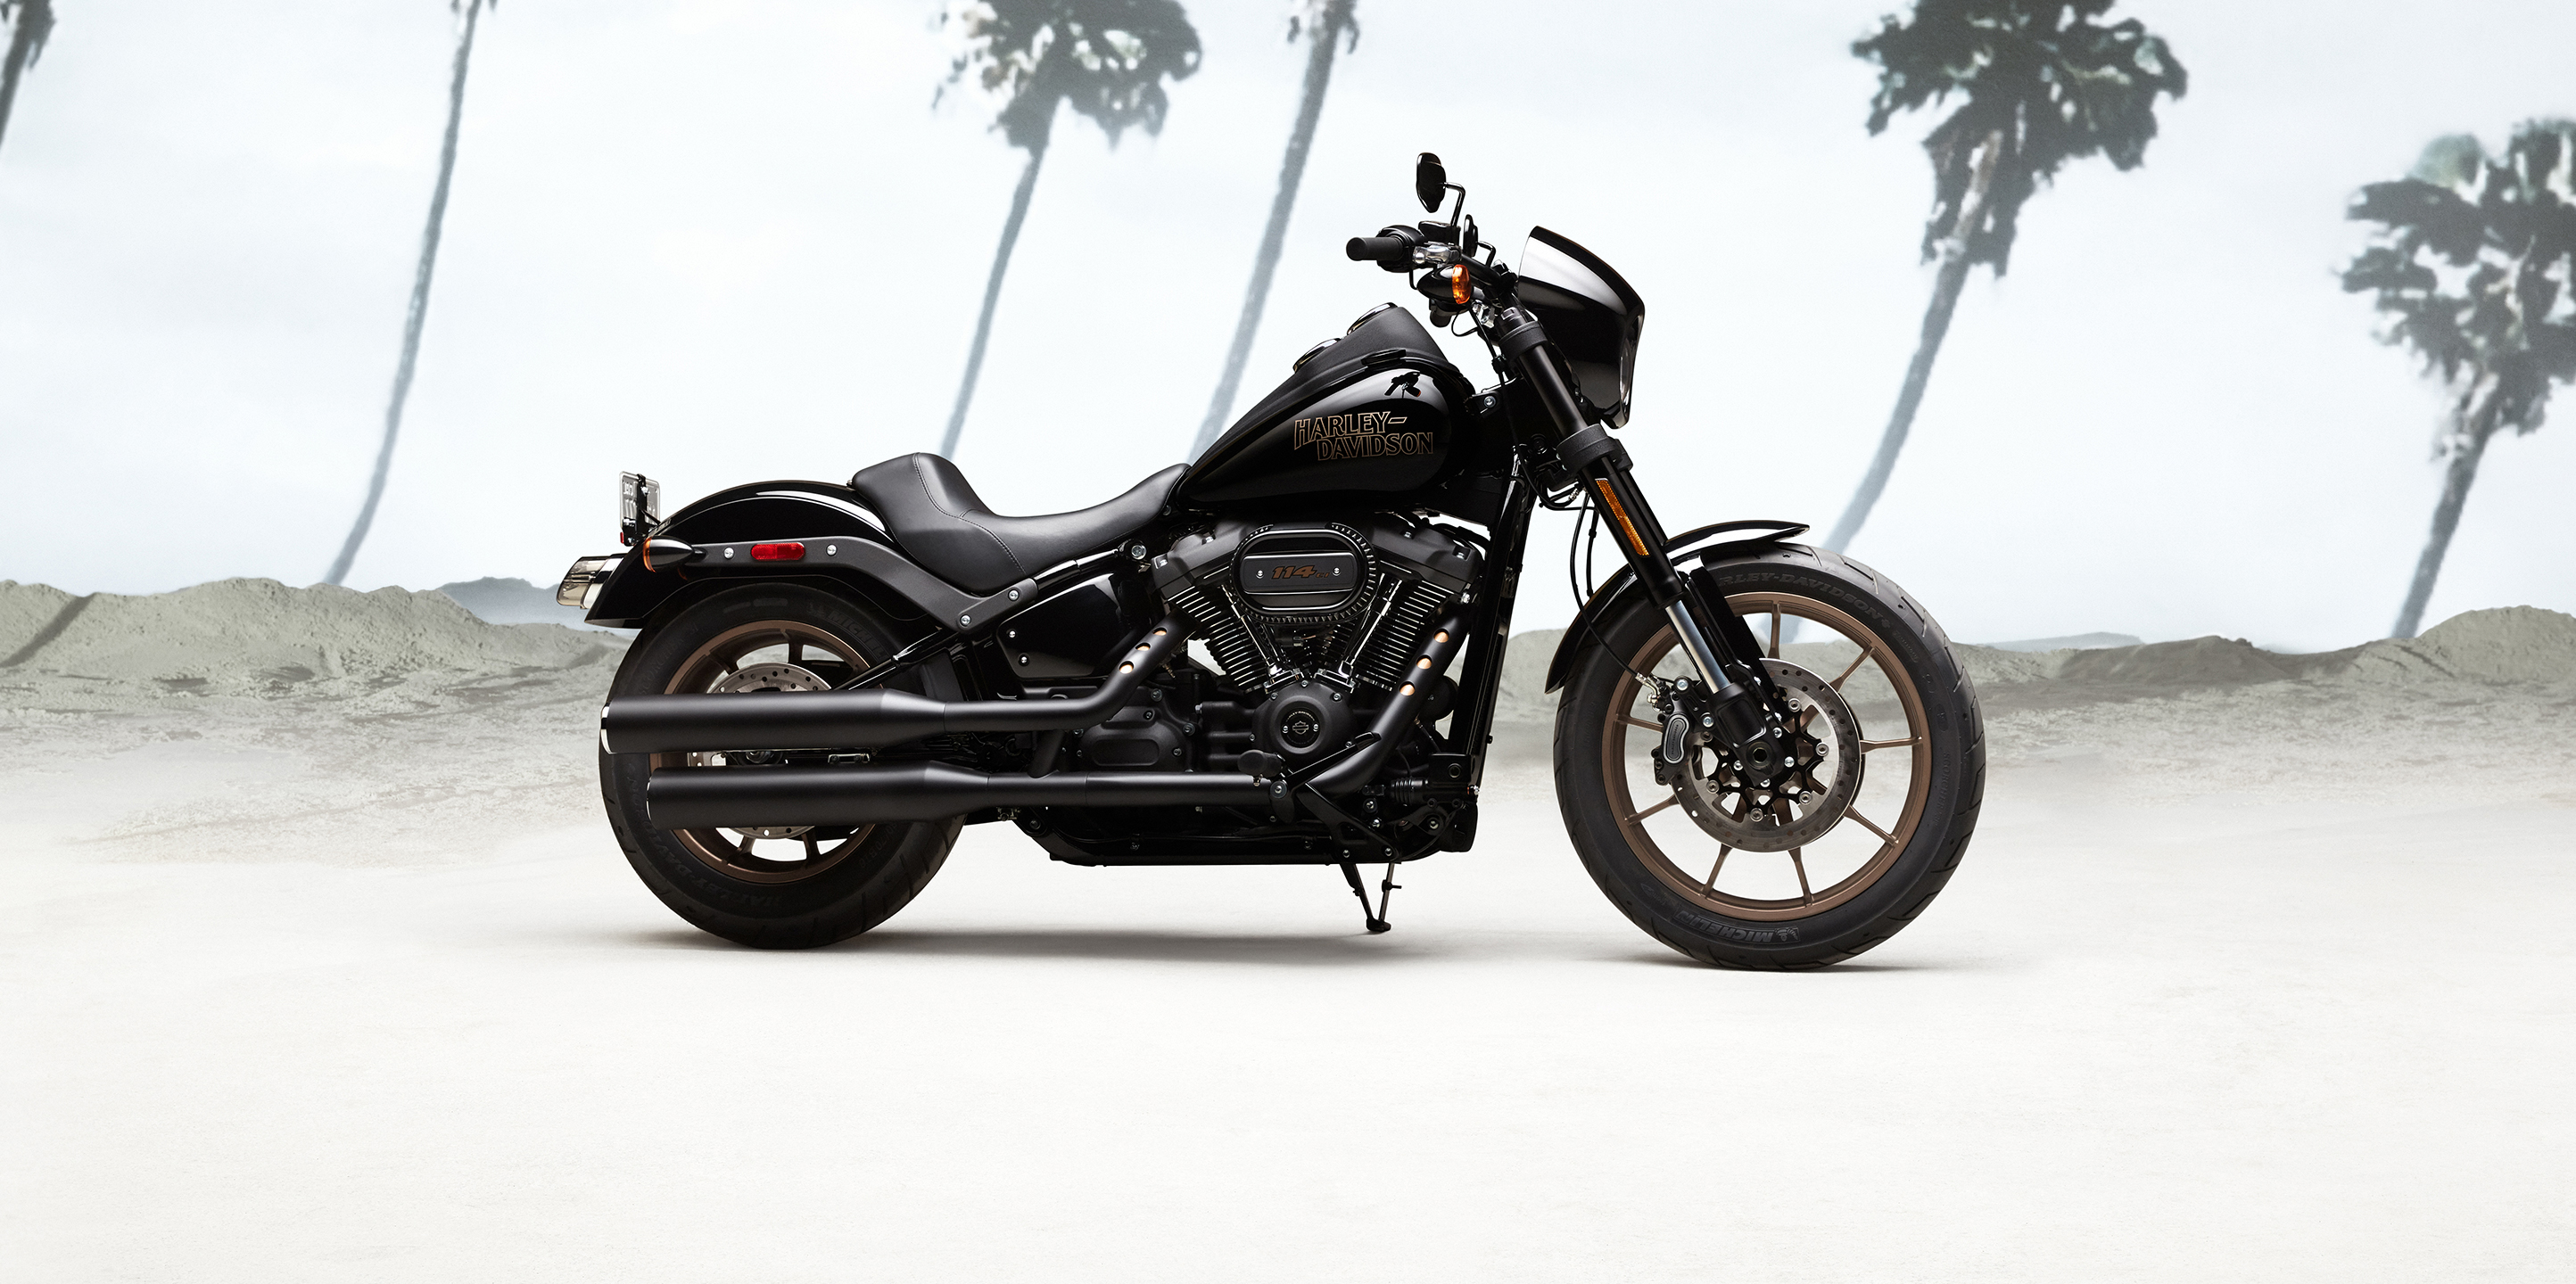 2020 Low Rider S Motorcycle | Harley-Davidson USA